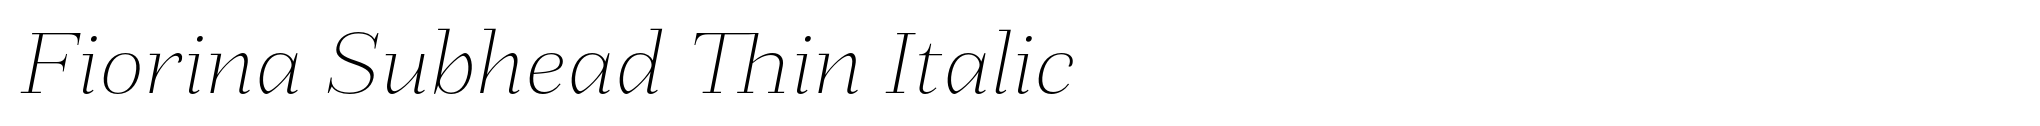 Fiorina Subhead Thin Italic image